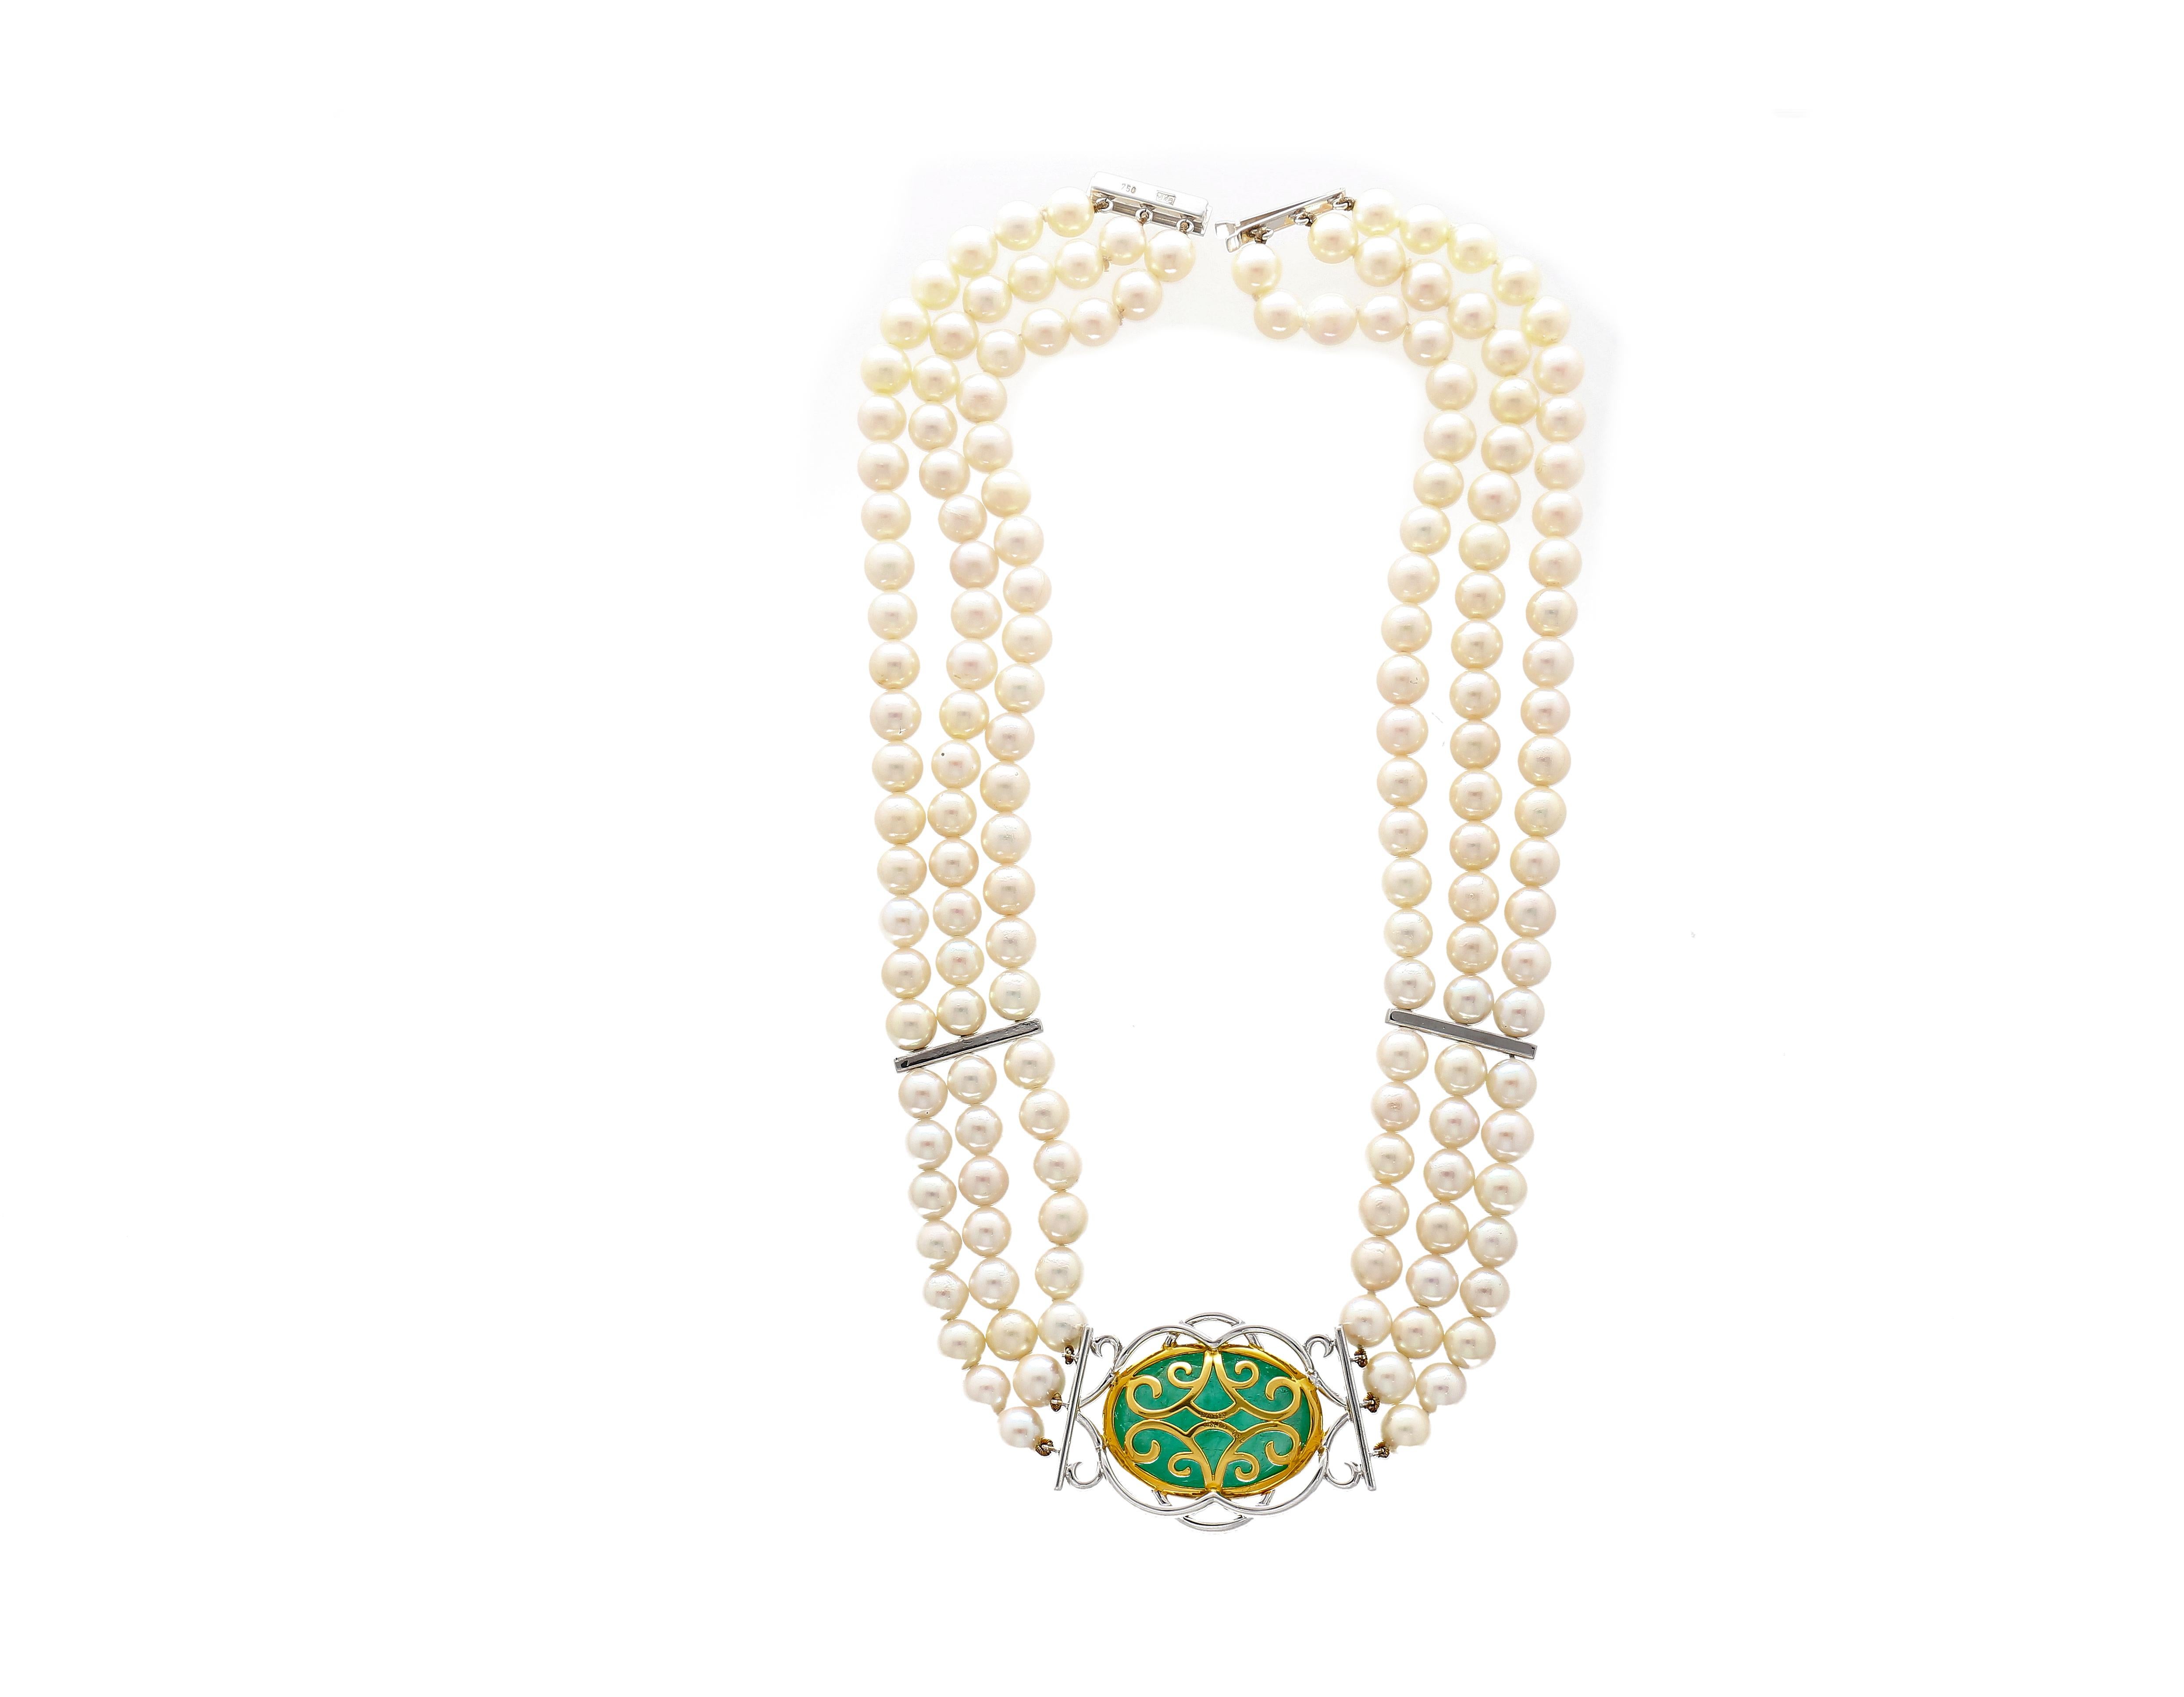 Ce collier comporte un pendentif serti d'une émeraude verte taillée en cabochon. Agrémenté de 150 pierres latérales en diamant rond, ce magnifique collier est relié à 3 rangs de perles. Ce collier ras-de-cou vintage se pose magnifiquement sur le cou